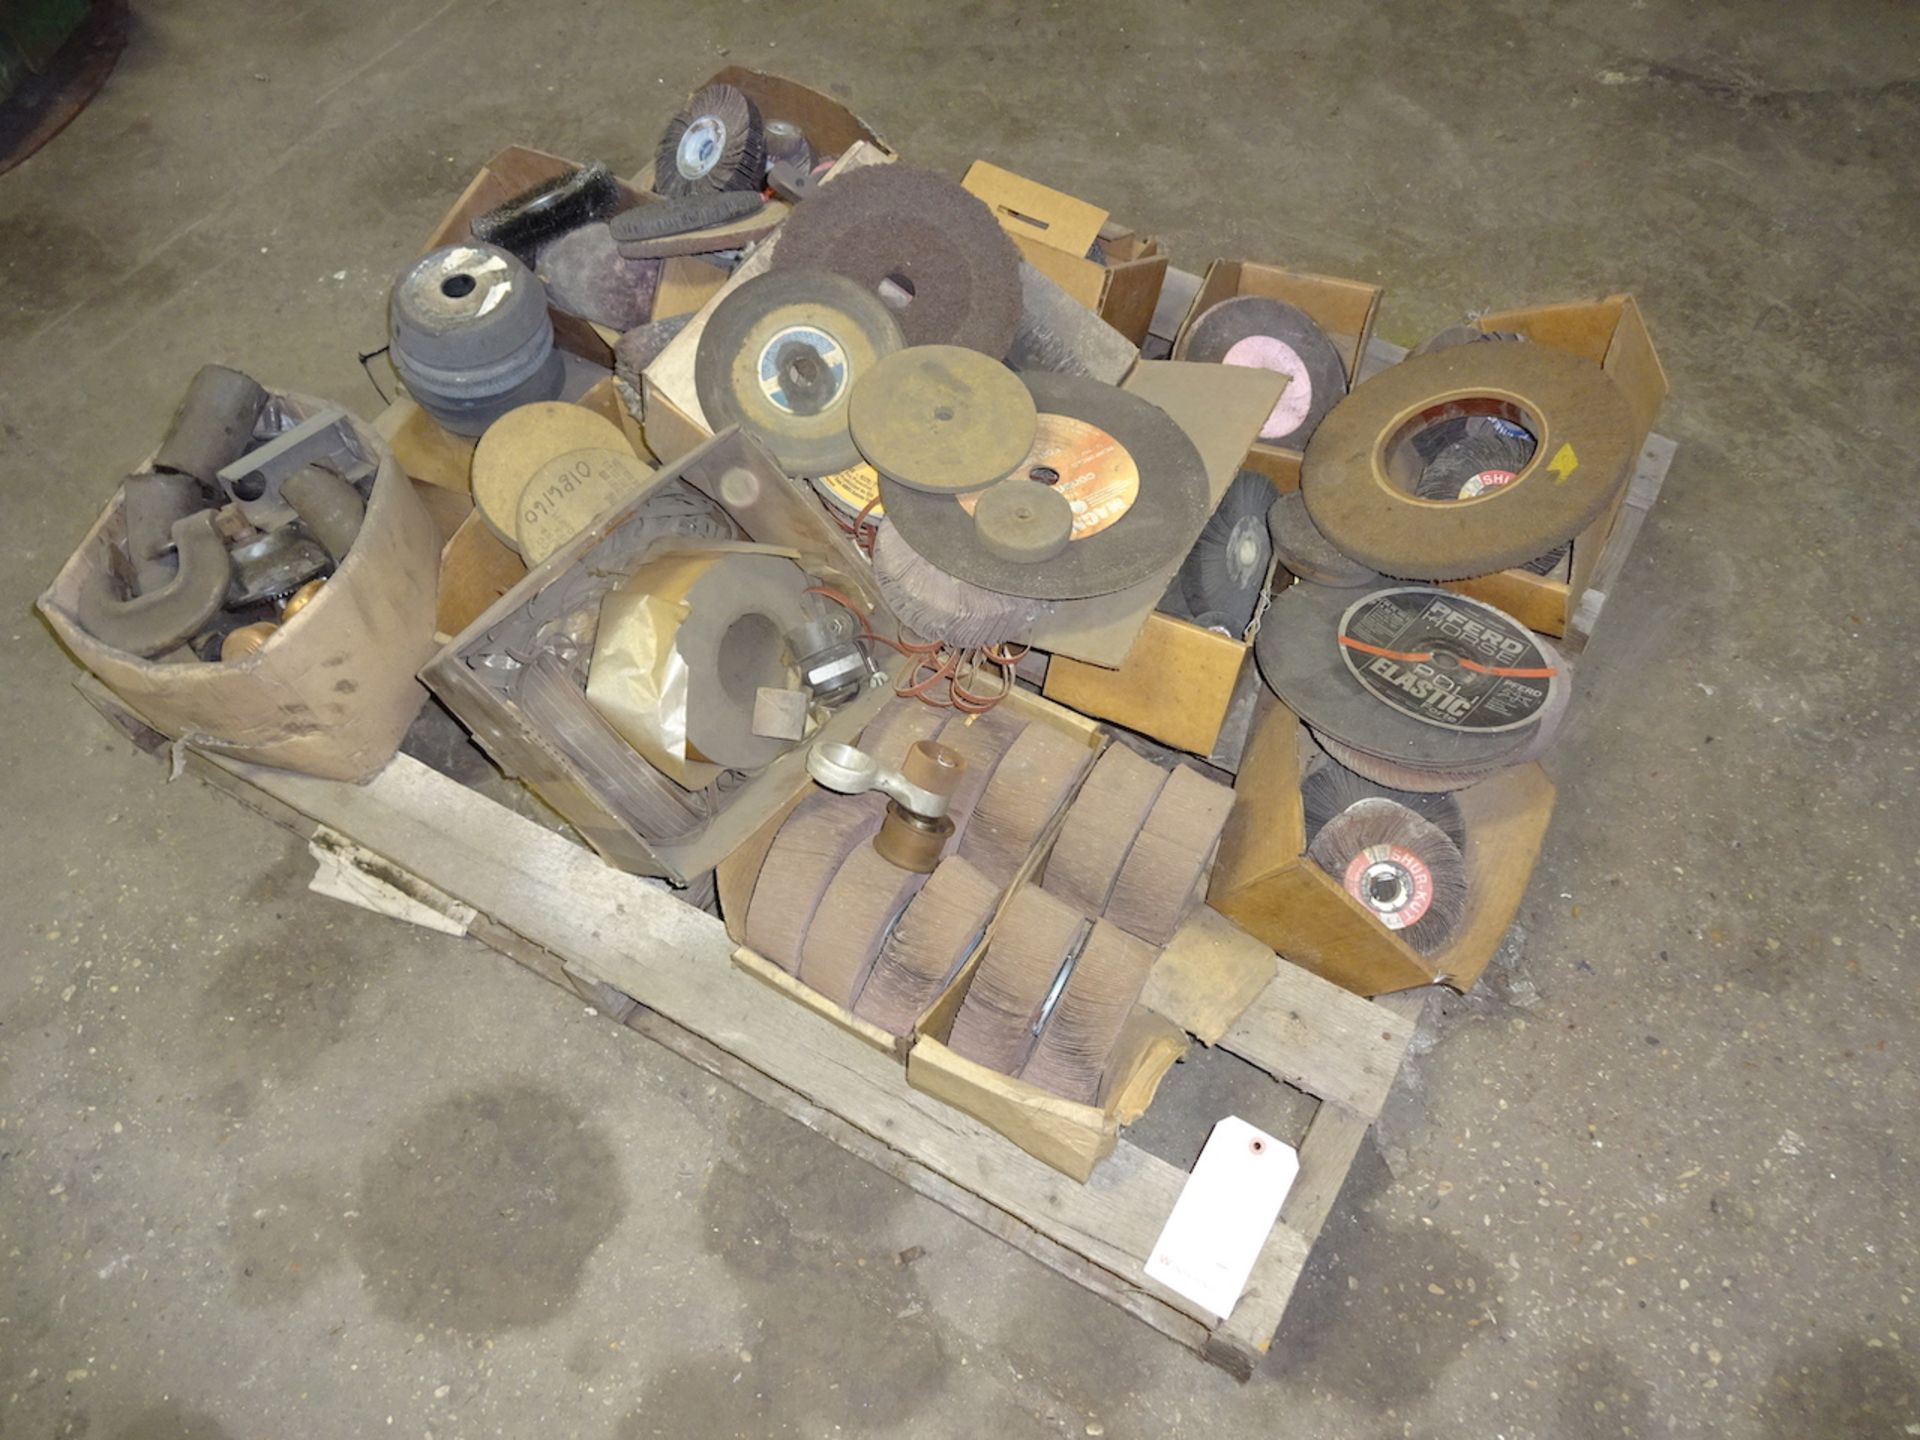 LOT: Assorted Abrasives, Belts, Wheels, etc. on (3) Skids (South Beloit) - Image 3 of 3